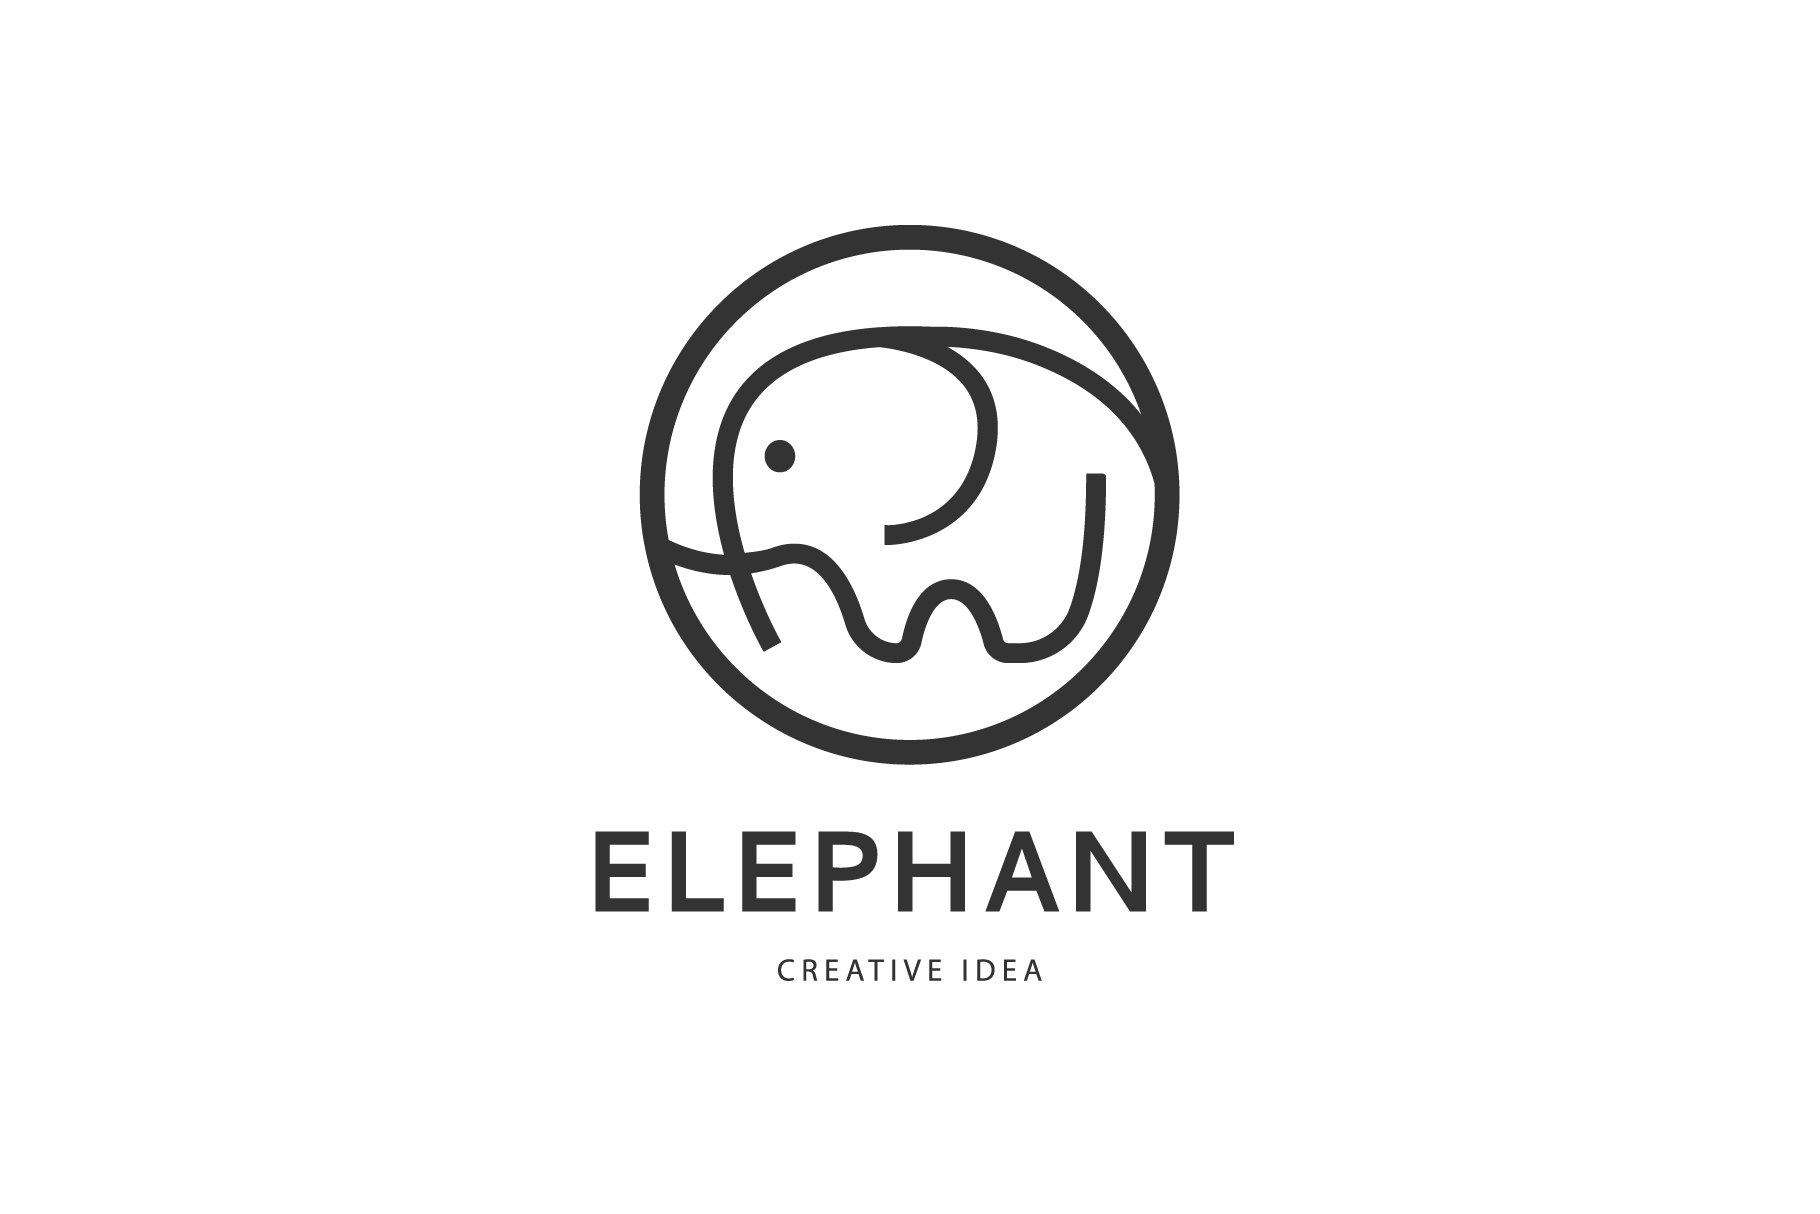 Elephant logo design. cover image.